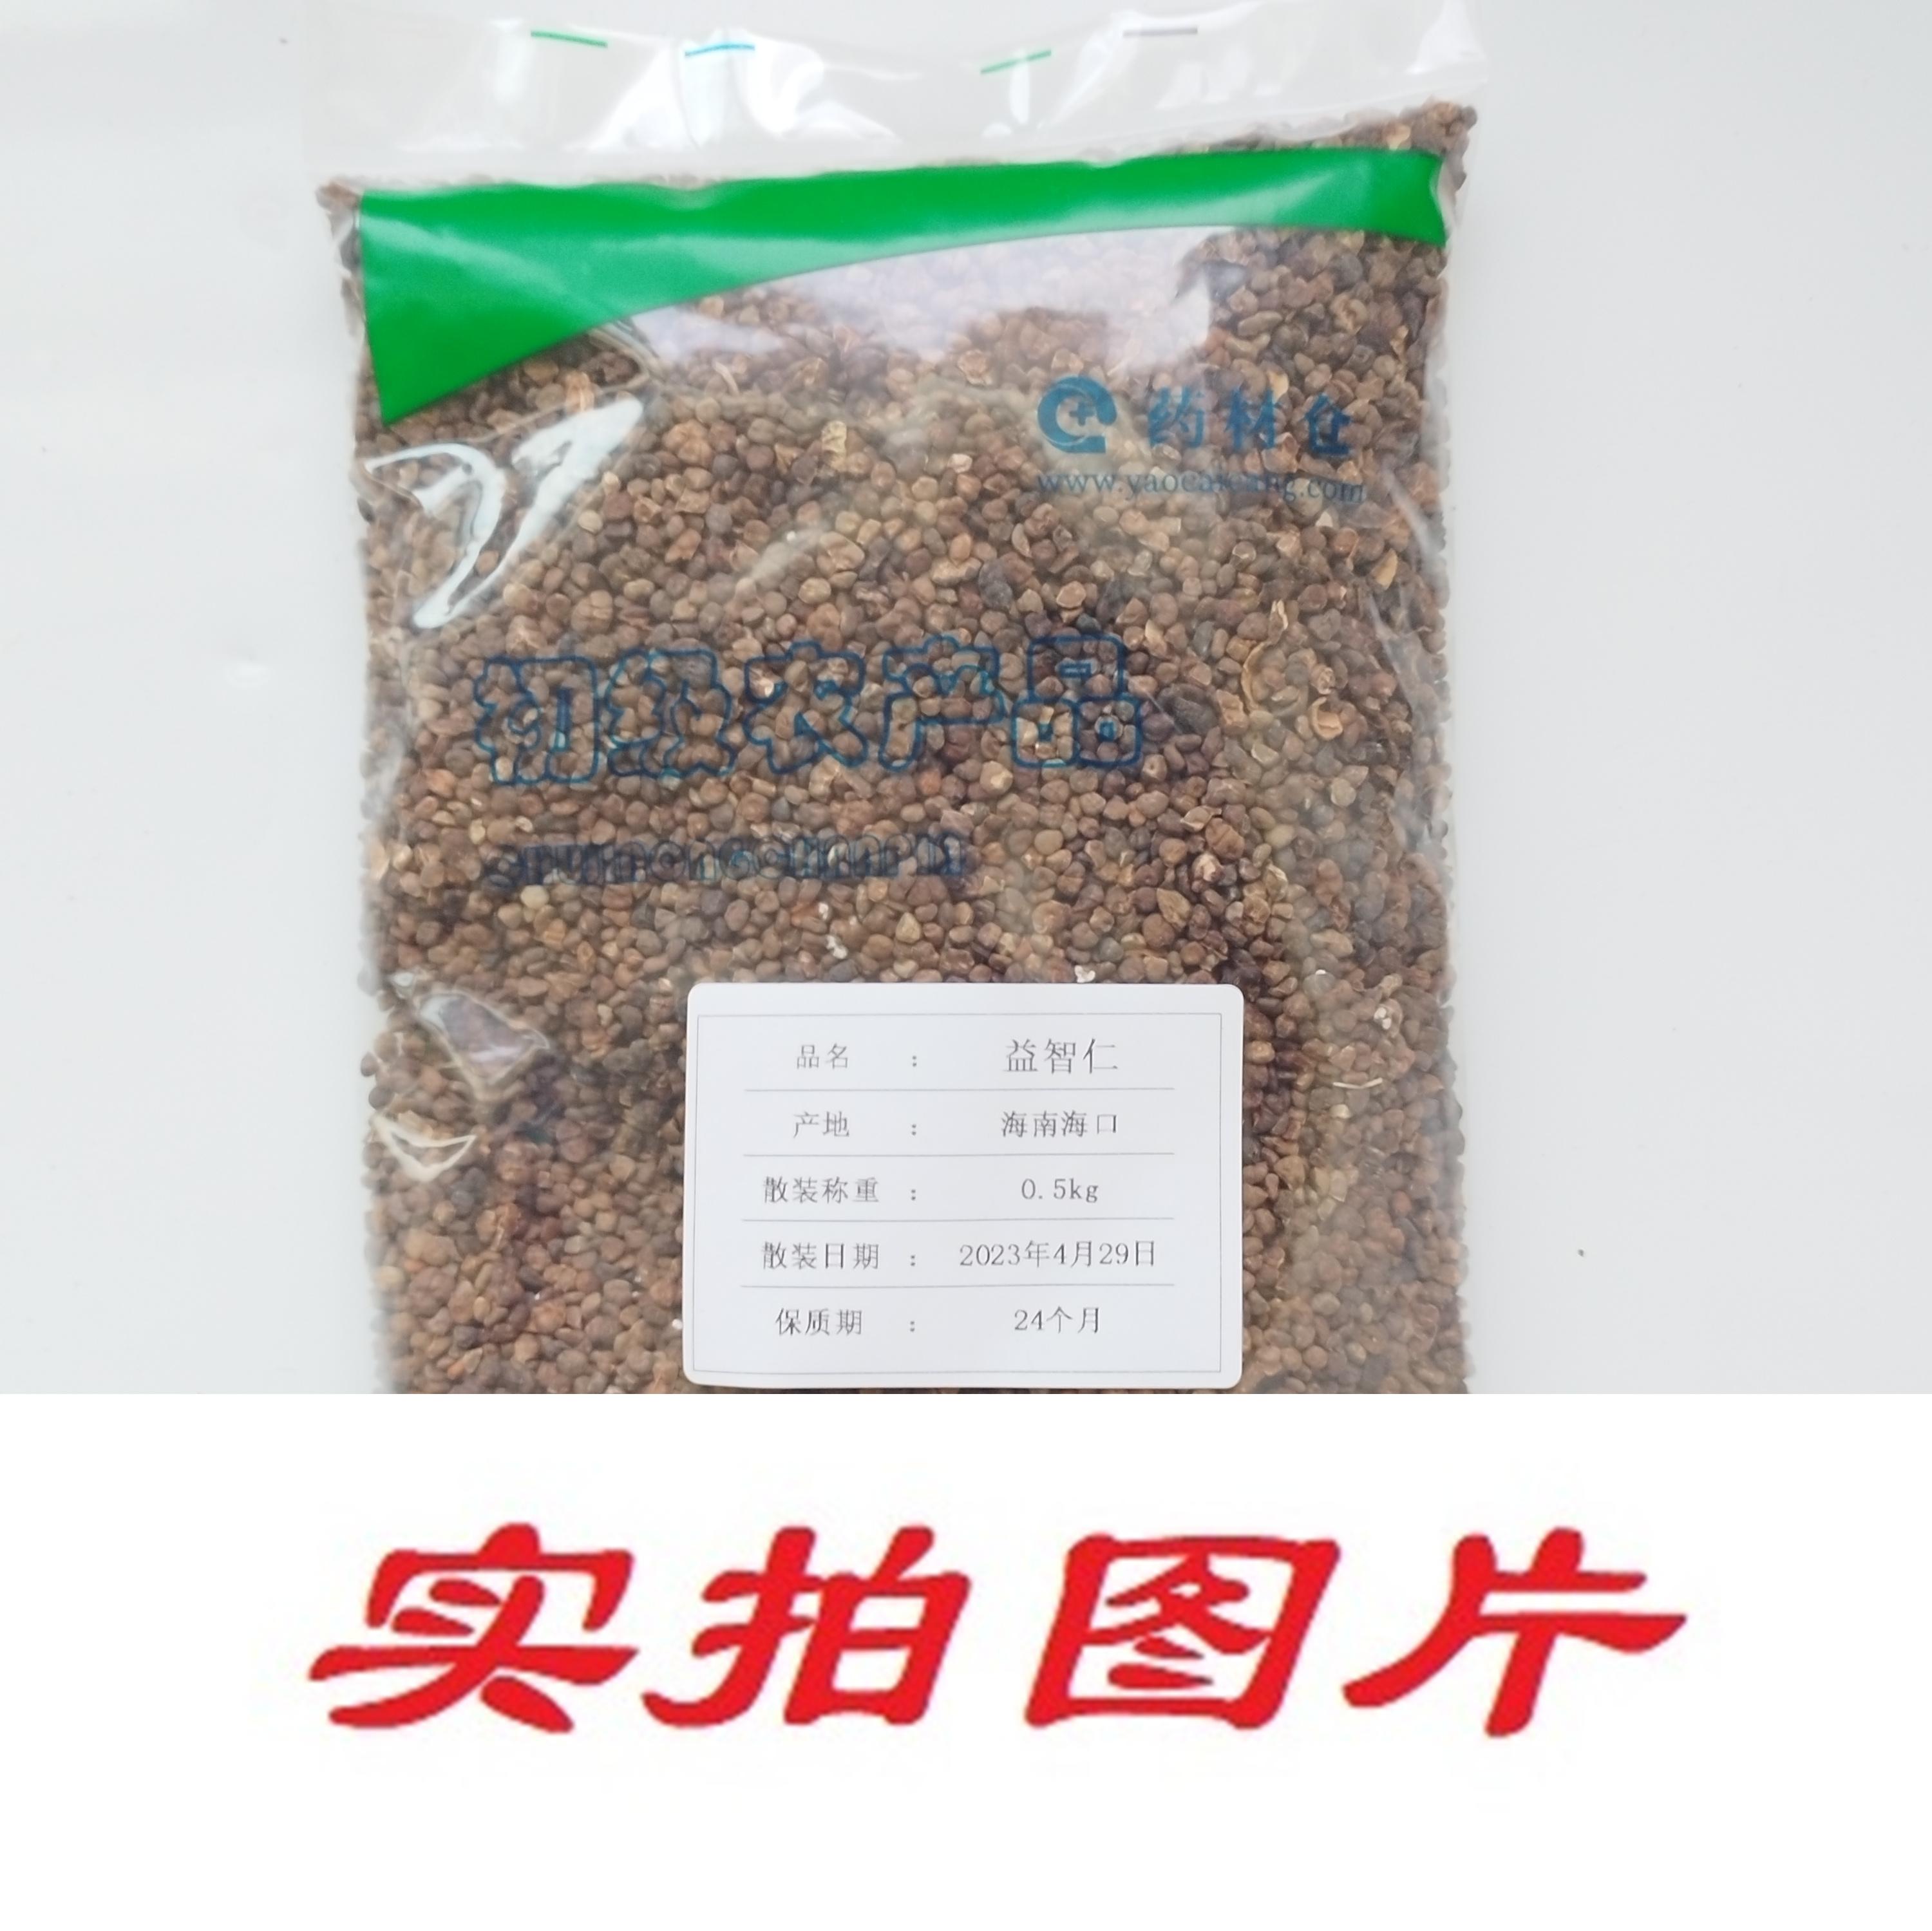 【】益智仁0.5kg-农副产品